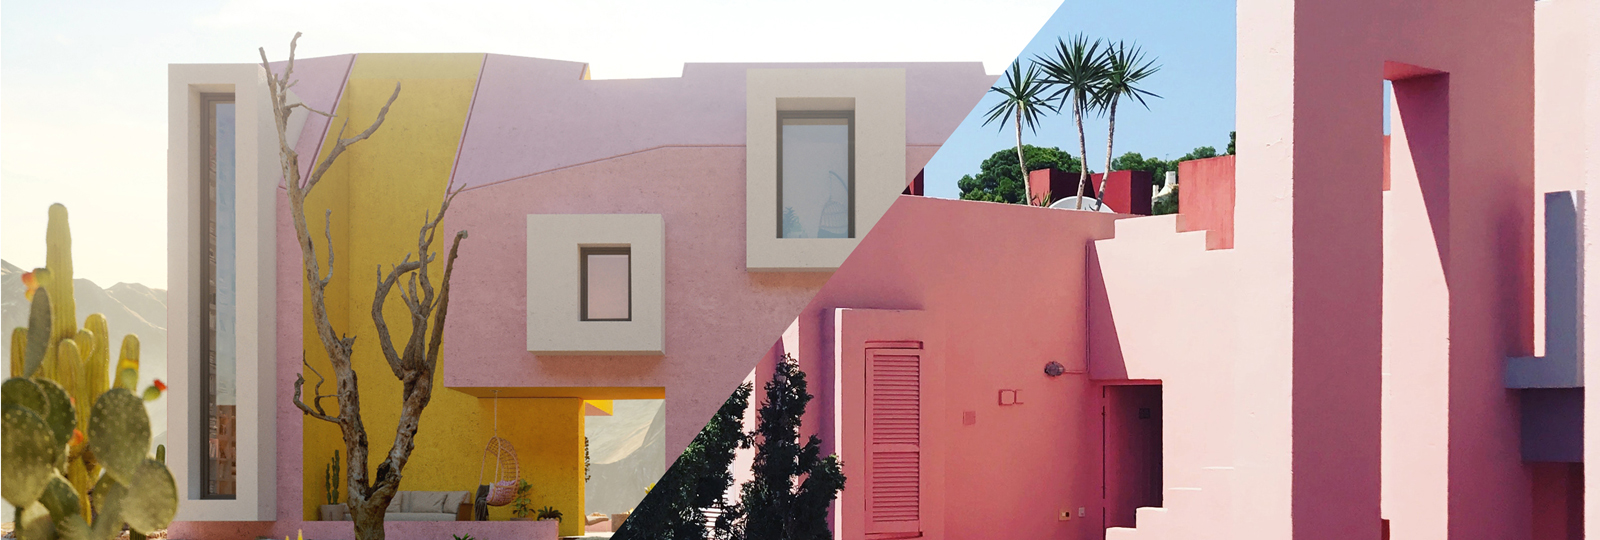 Pink architecture: La Muralla Roja and Sonora House